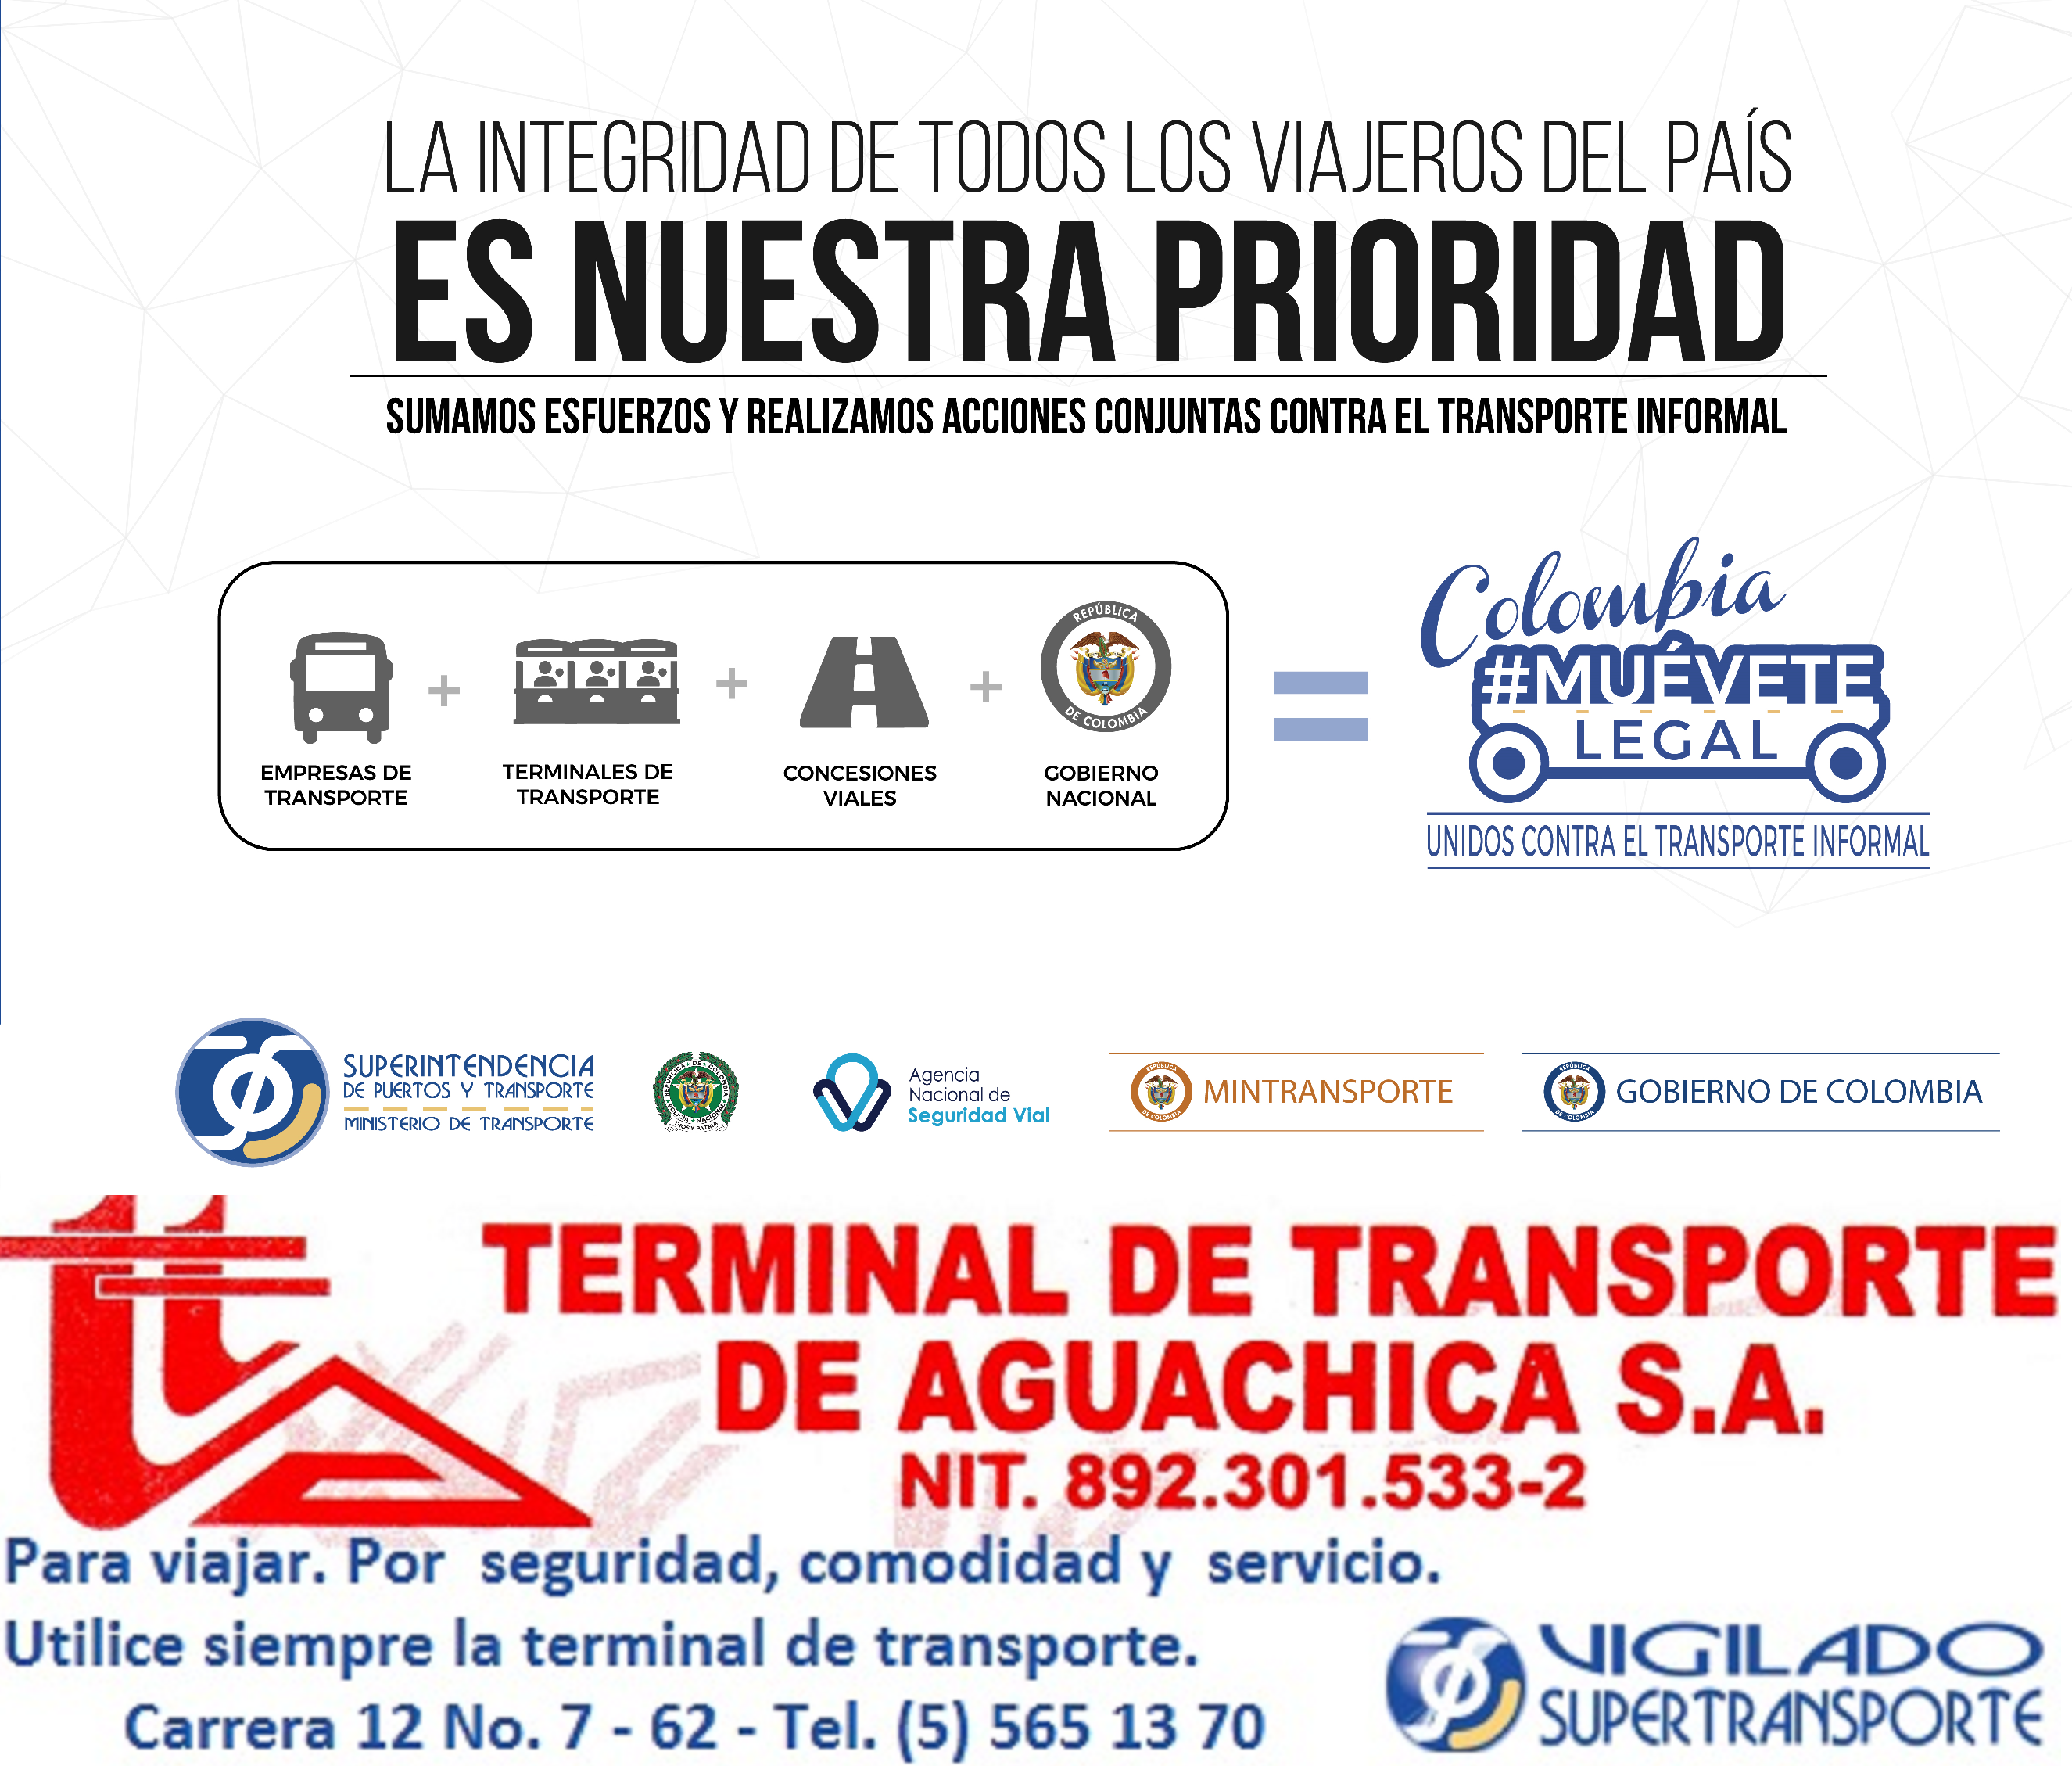 Combatir el transporte ilegal es responsabilidad de todos. Por eso #TerminalAguachica también se une a la campaña de la @Supertransporte: Colombia, #MuéveteLegal.